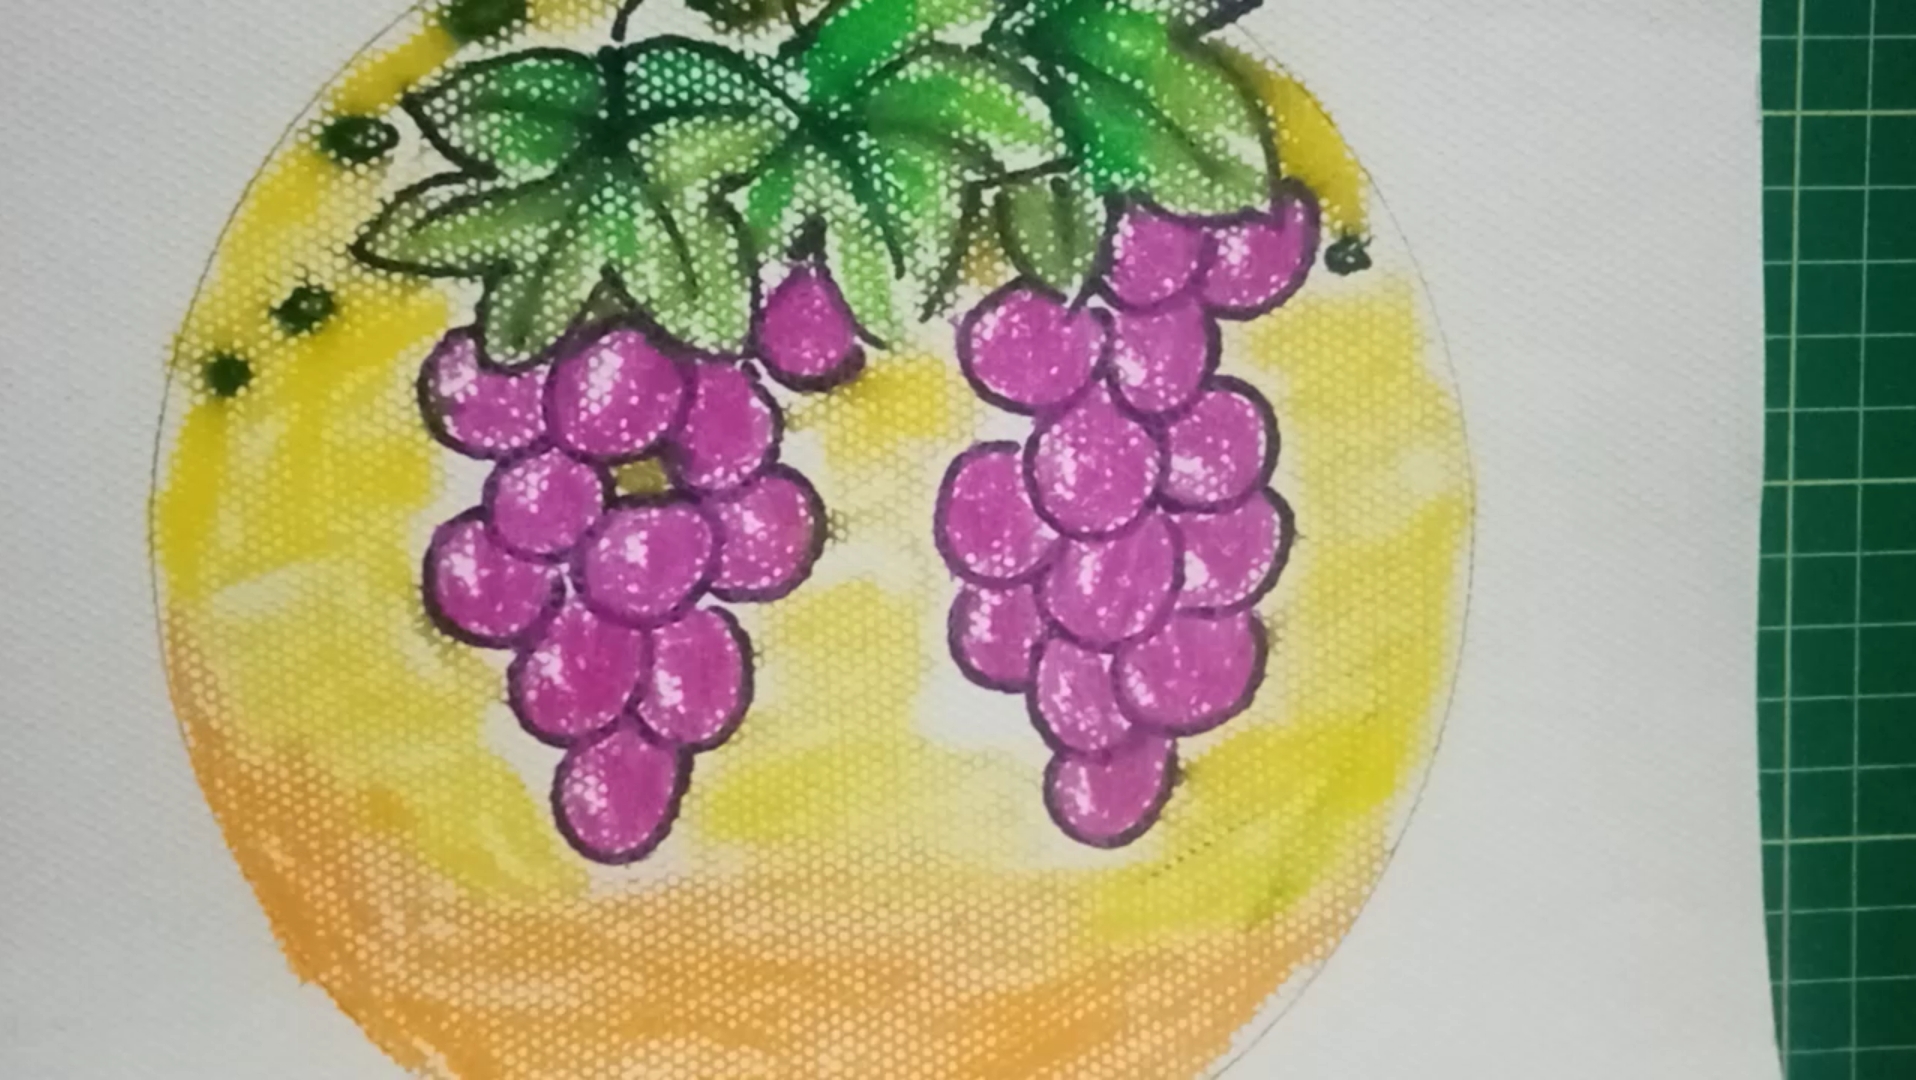 四年级娃的课堂小作业:色彩的对比之紫黄互补色对,一串葡萄